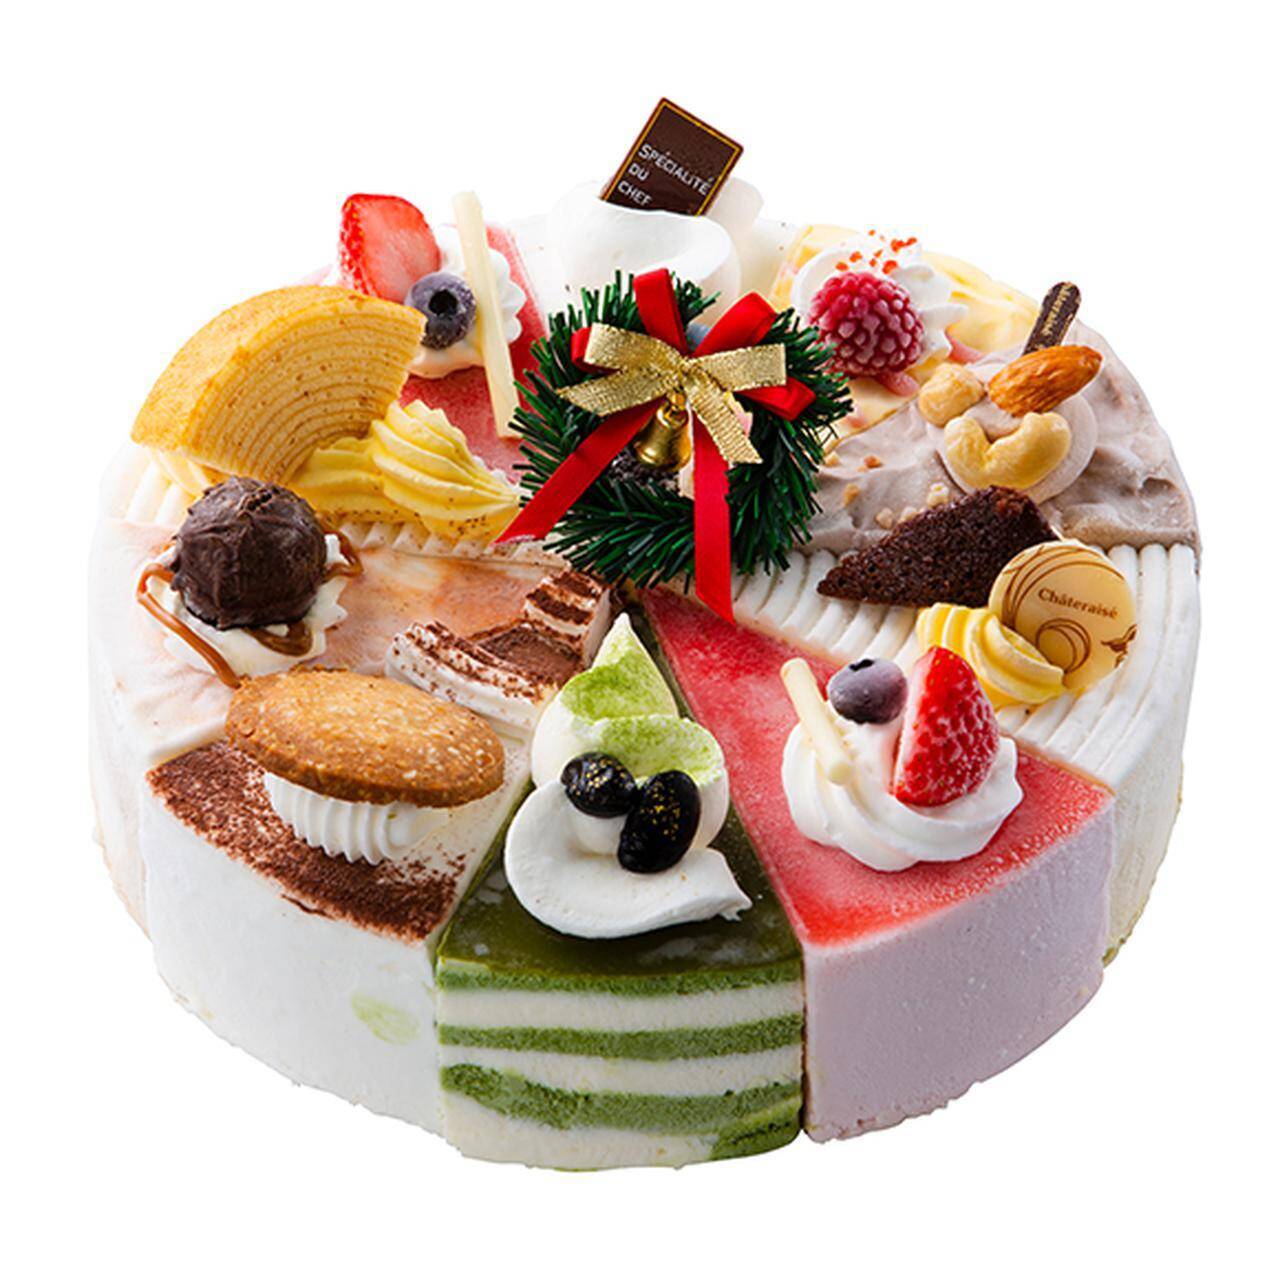 シャトレーゼ 2020年のクリスマスケーキが予約開始 糖質カットやアレルギー対応まで45種のケーキが勢ぞろい 2020年12月1日 エキサイトニュース 15 15